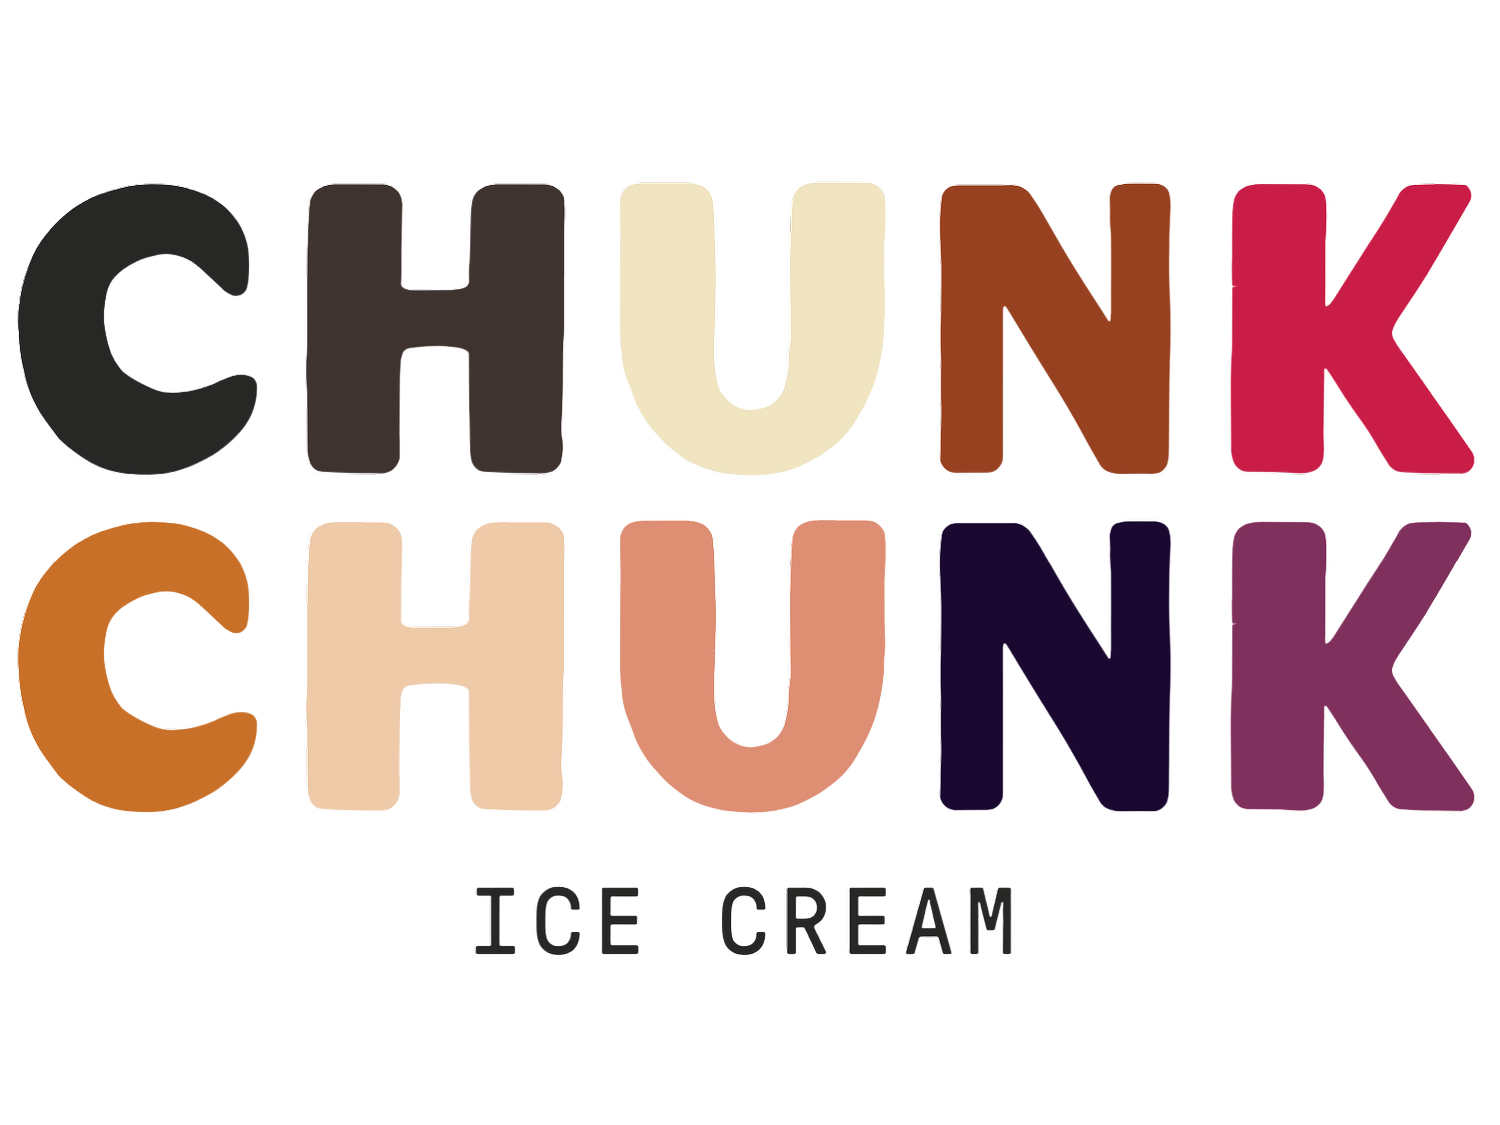 ChunkChunk Ice Cream